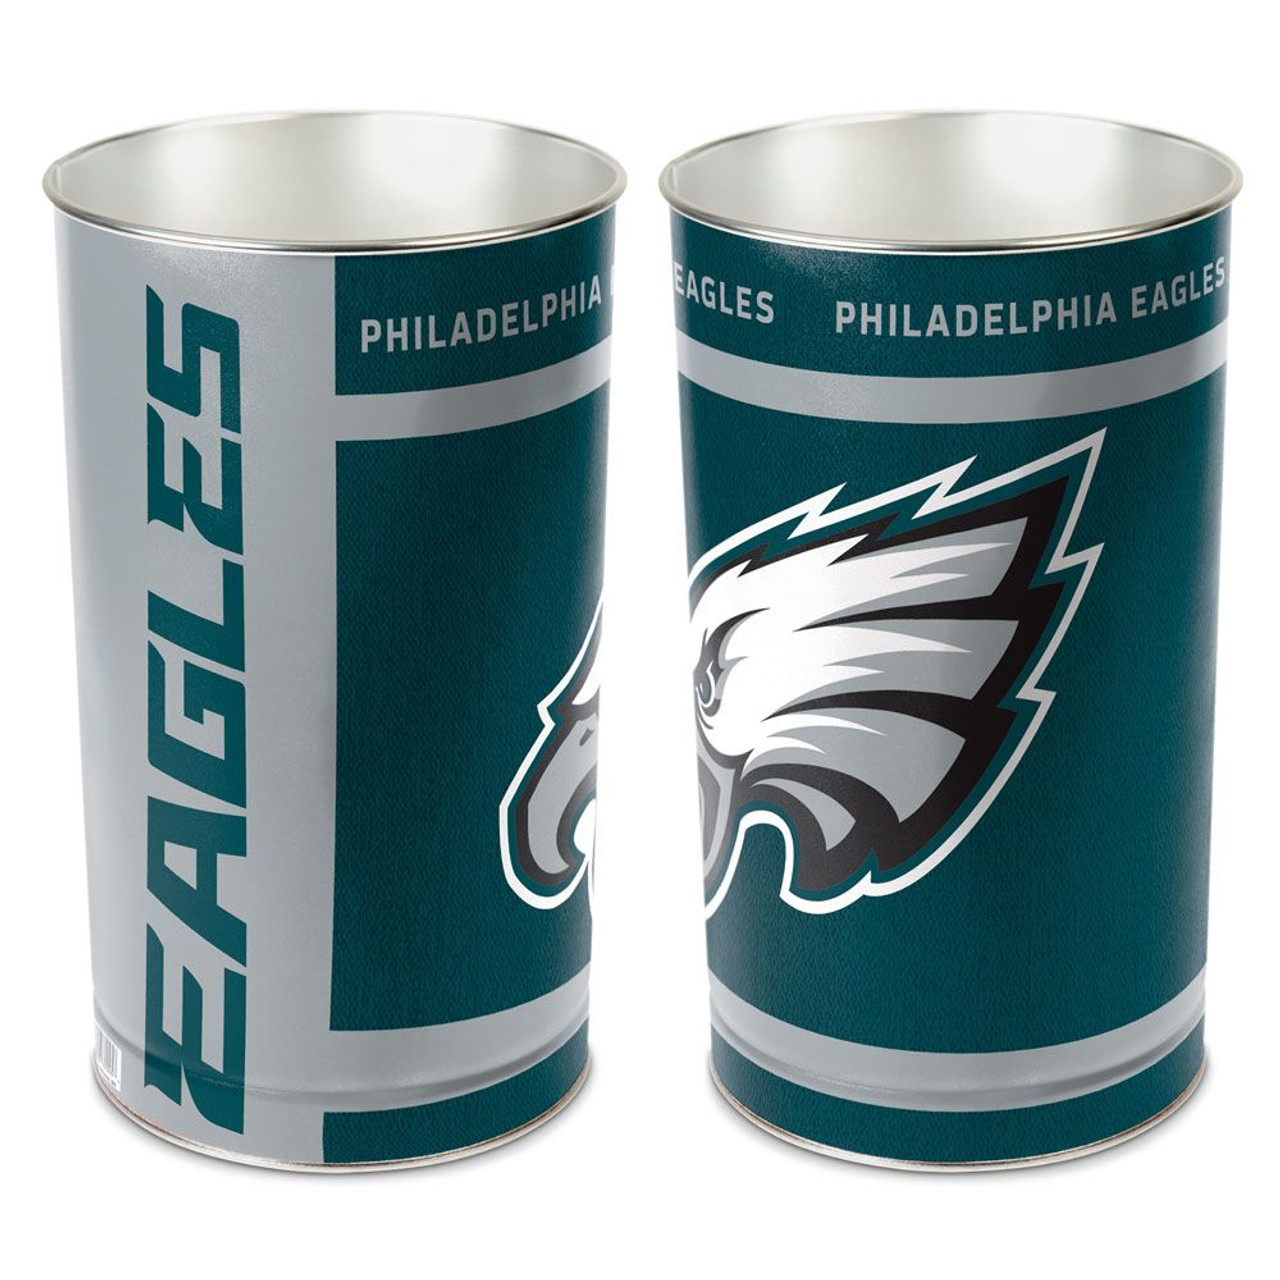 Philadelphia Eagles Wastebasket 15 Inch - Sports Fan Shop